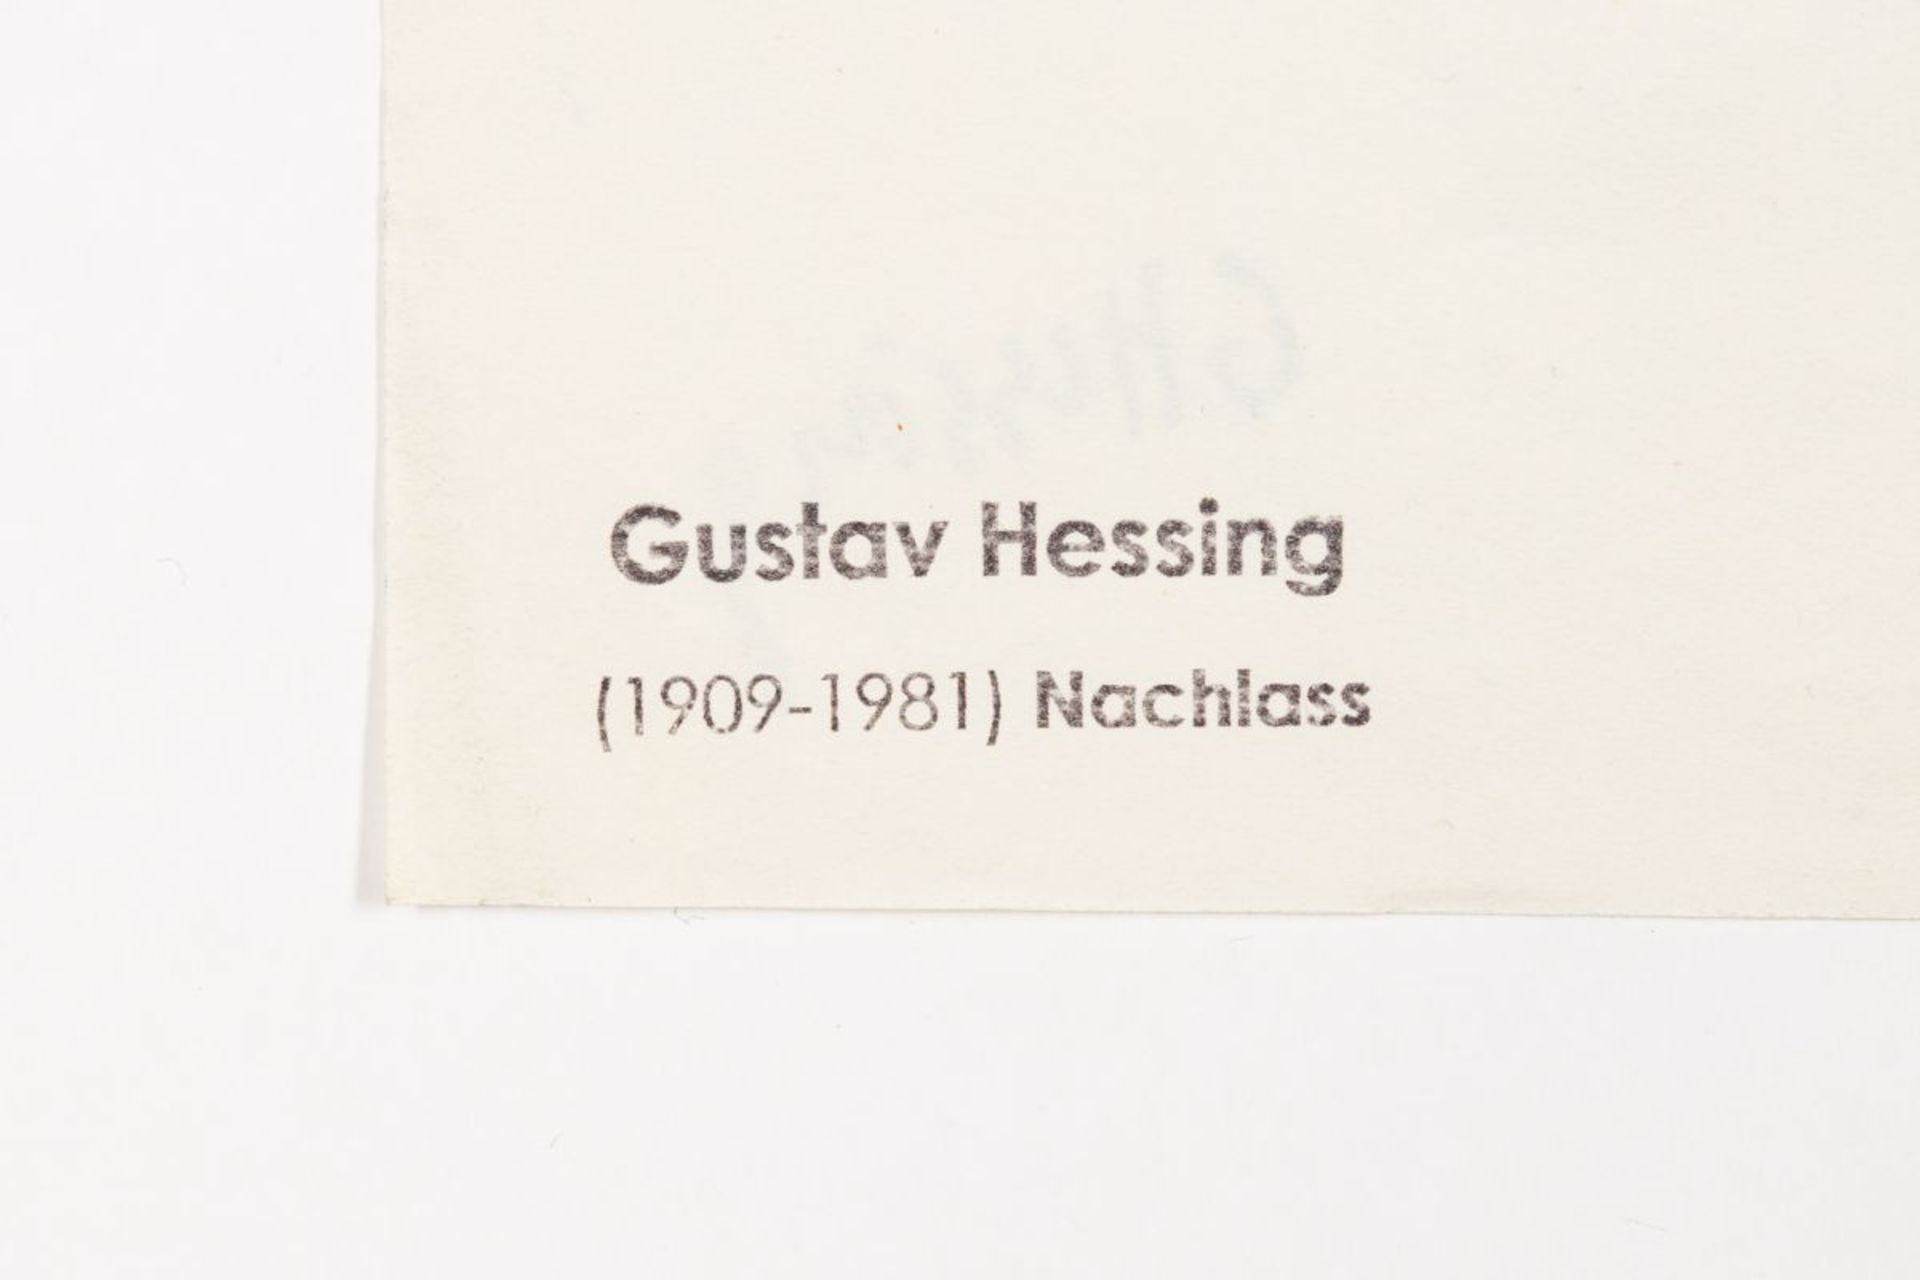 Hessing Gustav , Gunsam Karl Josef - Image 14 of 21